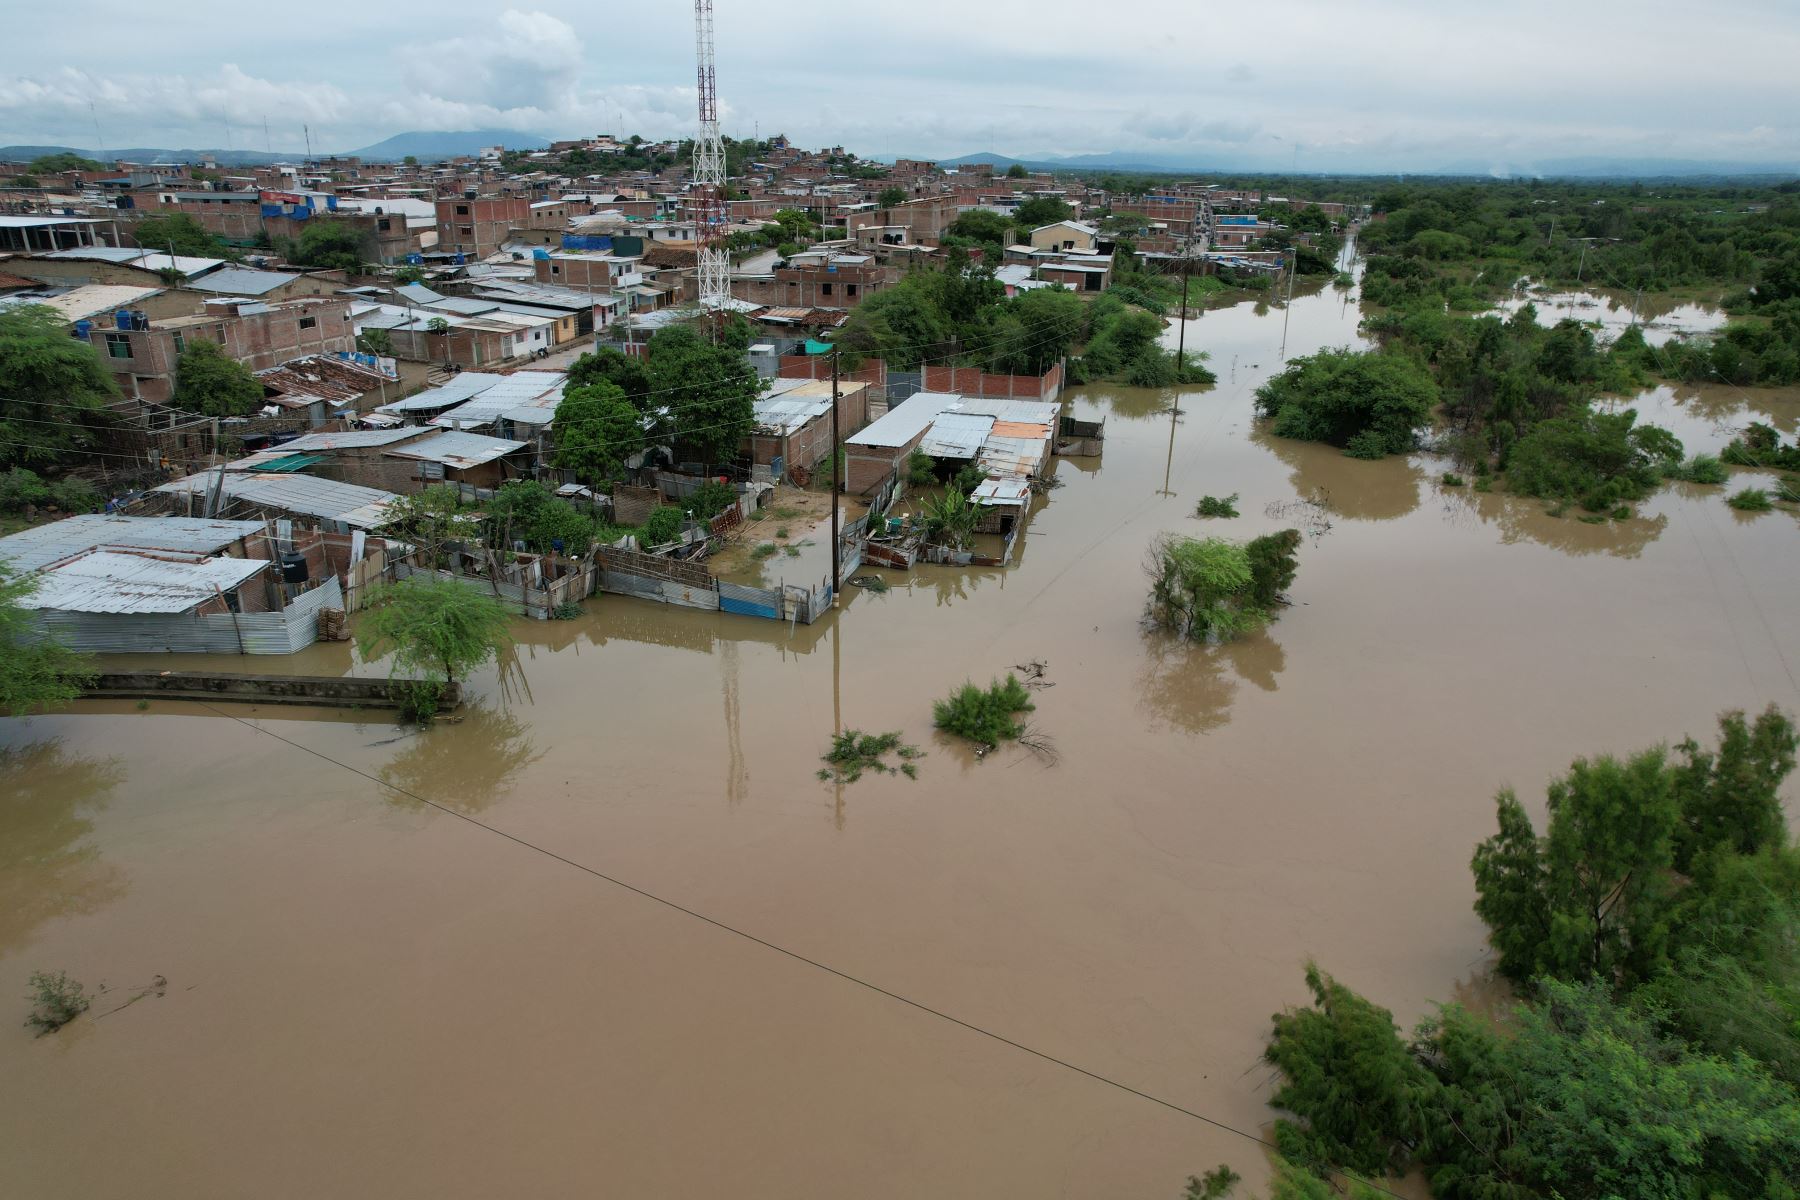 Eventos naturales de gran magnitud como las lluvias intensas registradas en Piura, explican la declaratoria de emergencia de nivel 5 decretada por el Gobierno, ANDINA/Ricardo Cuba